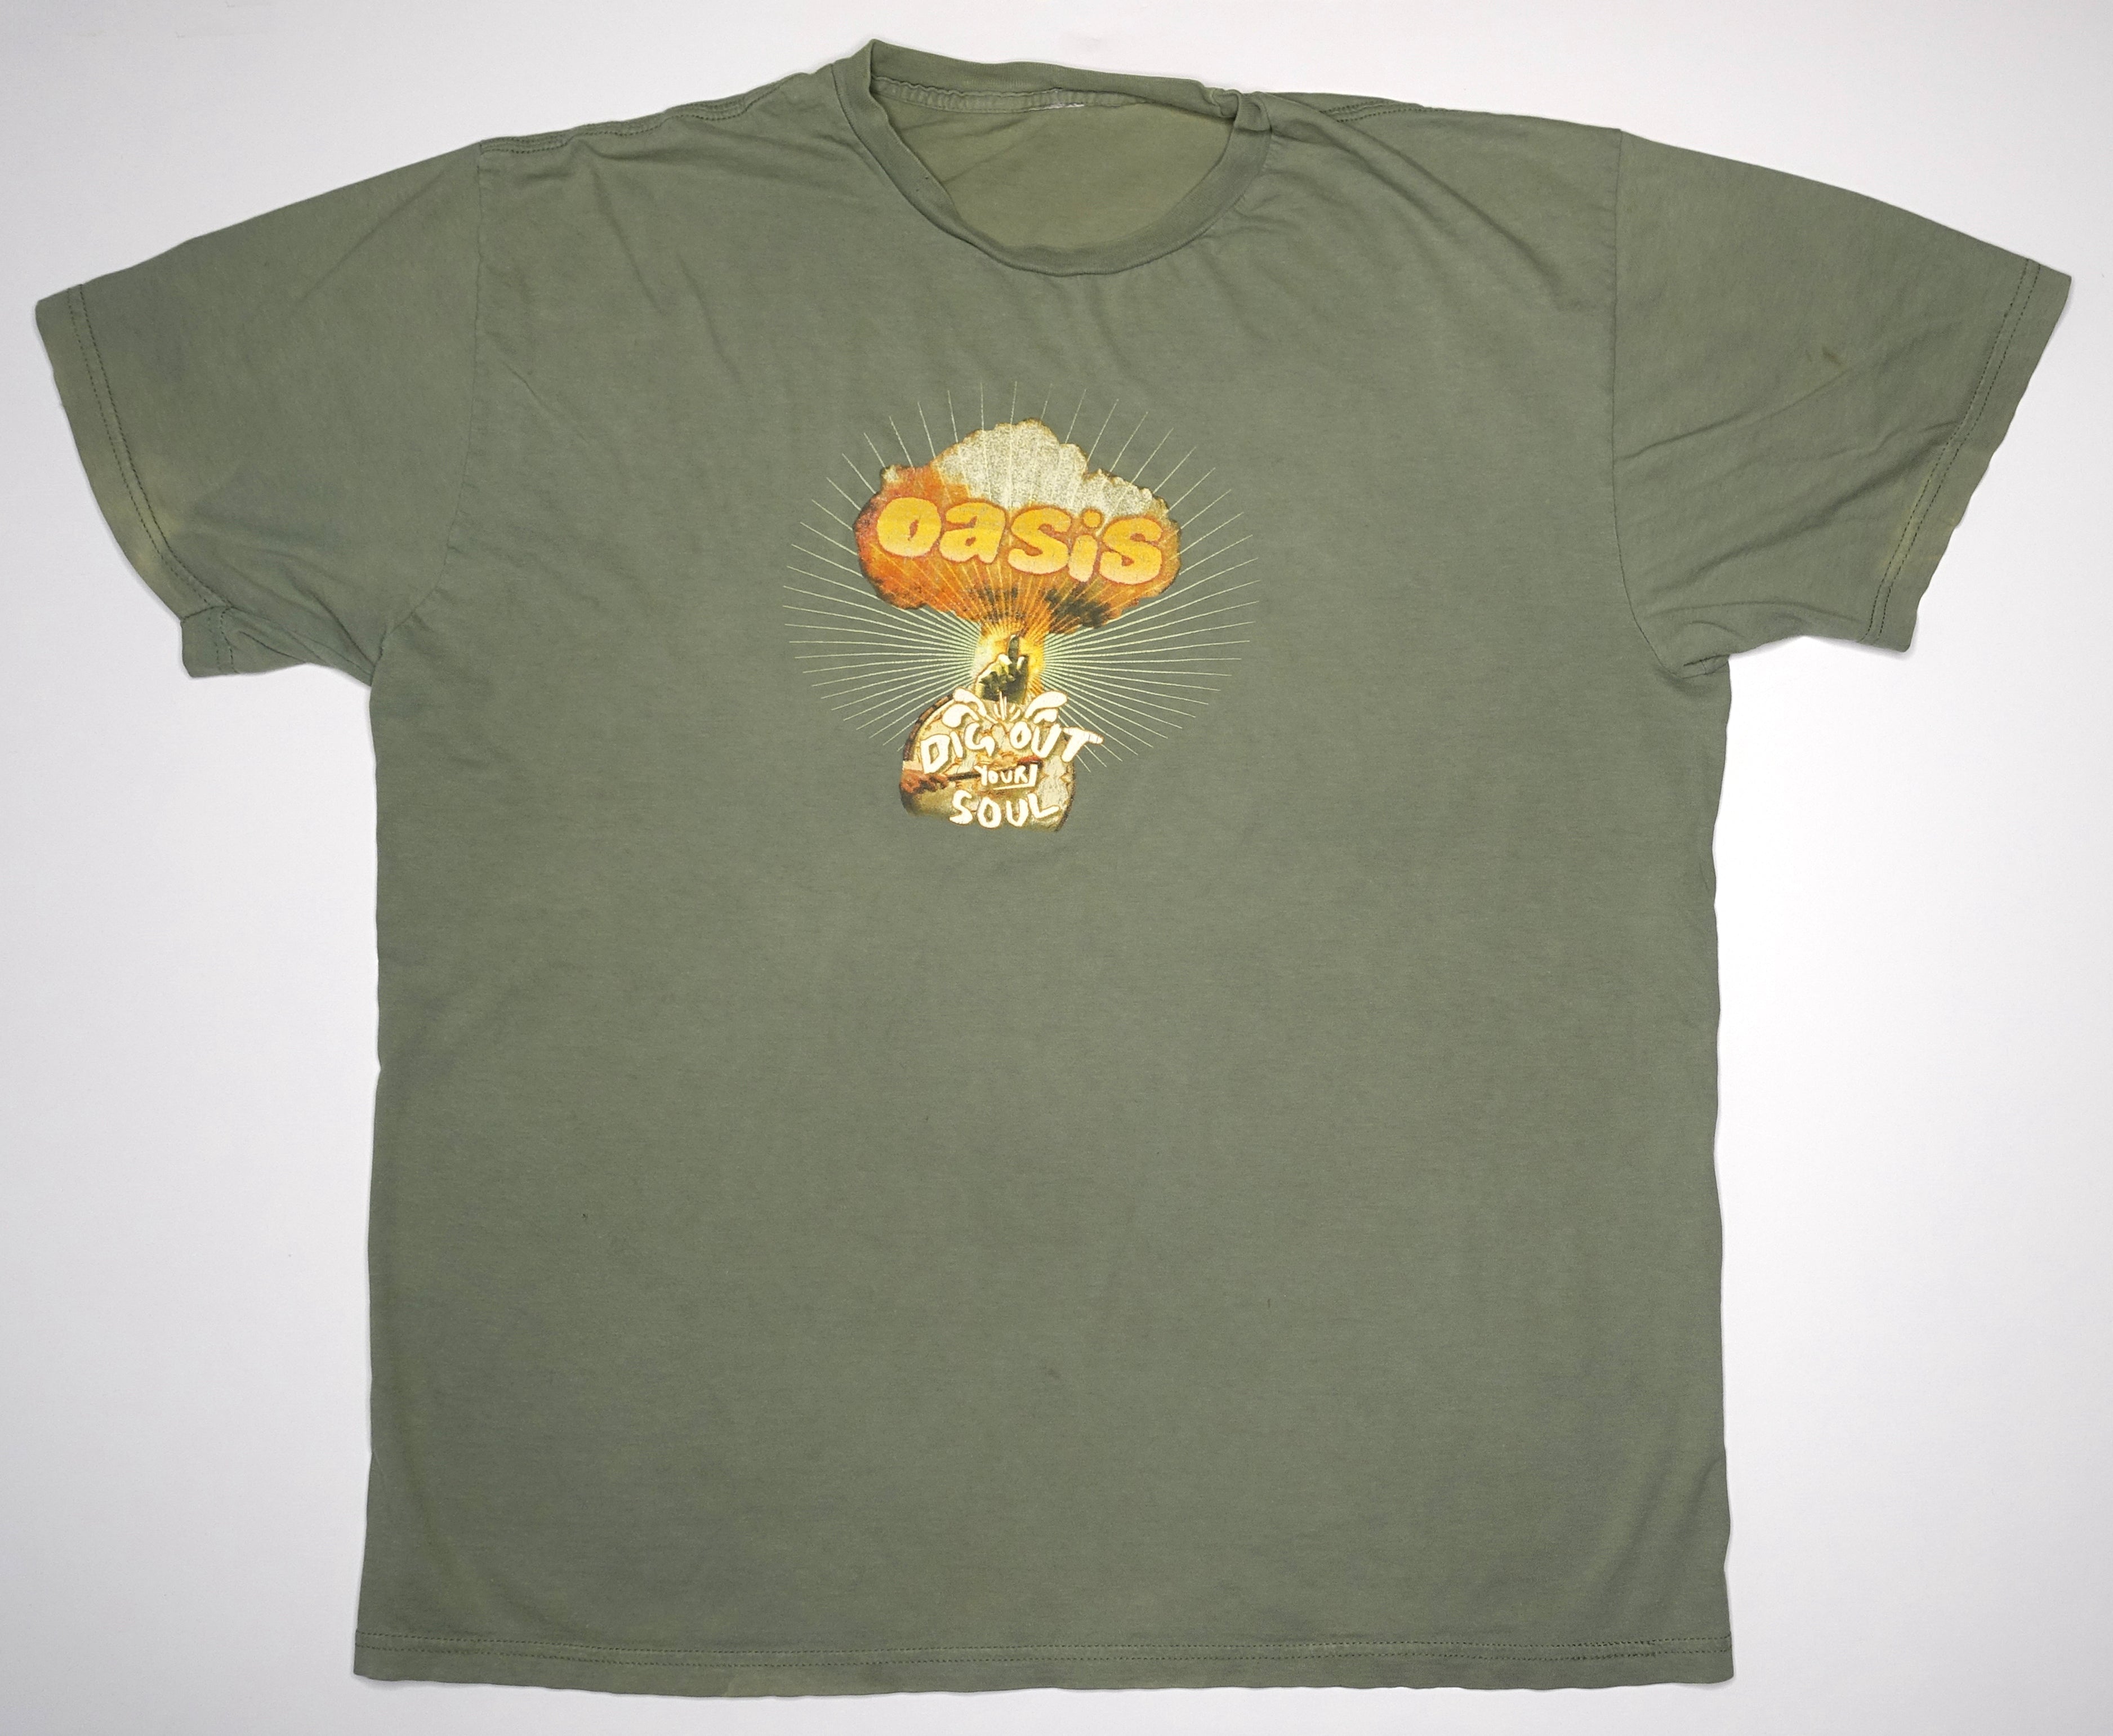 Oasis - Dig Out Your Soul Mushroom Cloud 2008 Tour Shirt Size XL